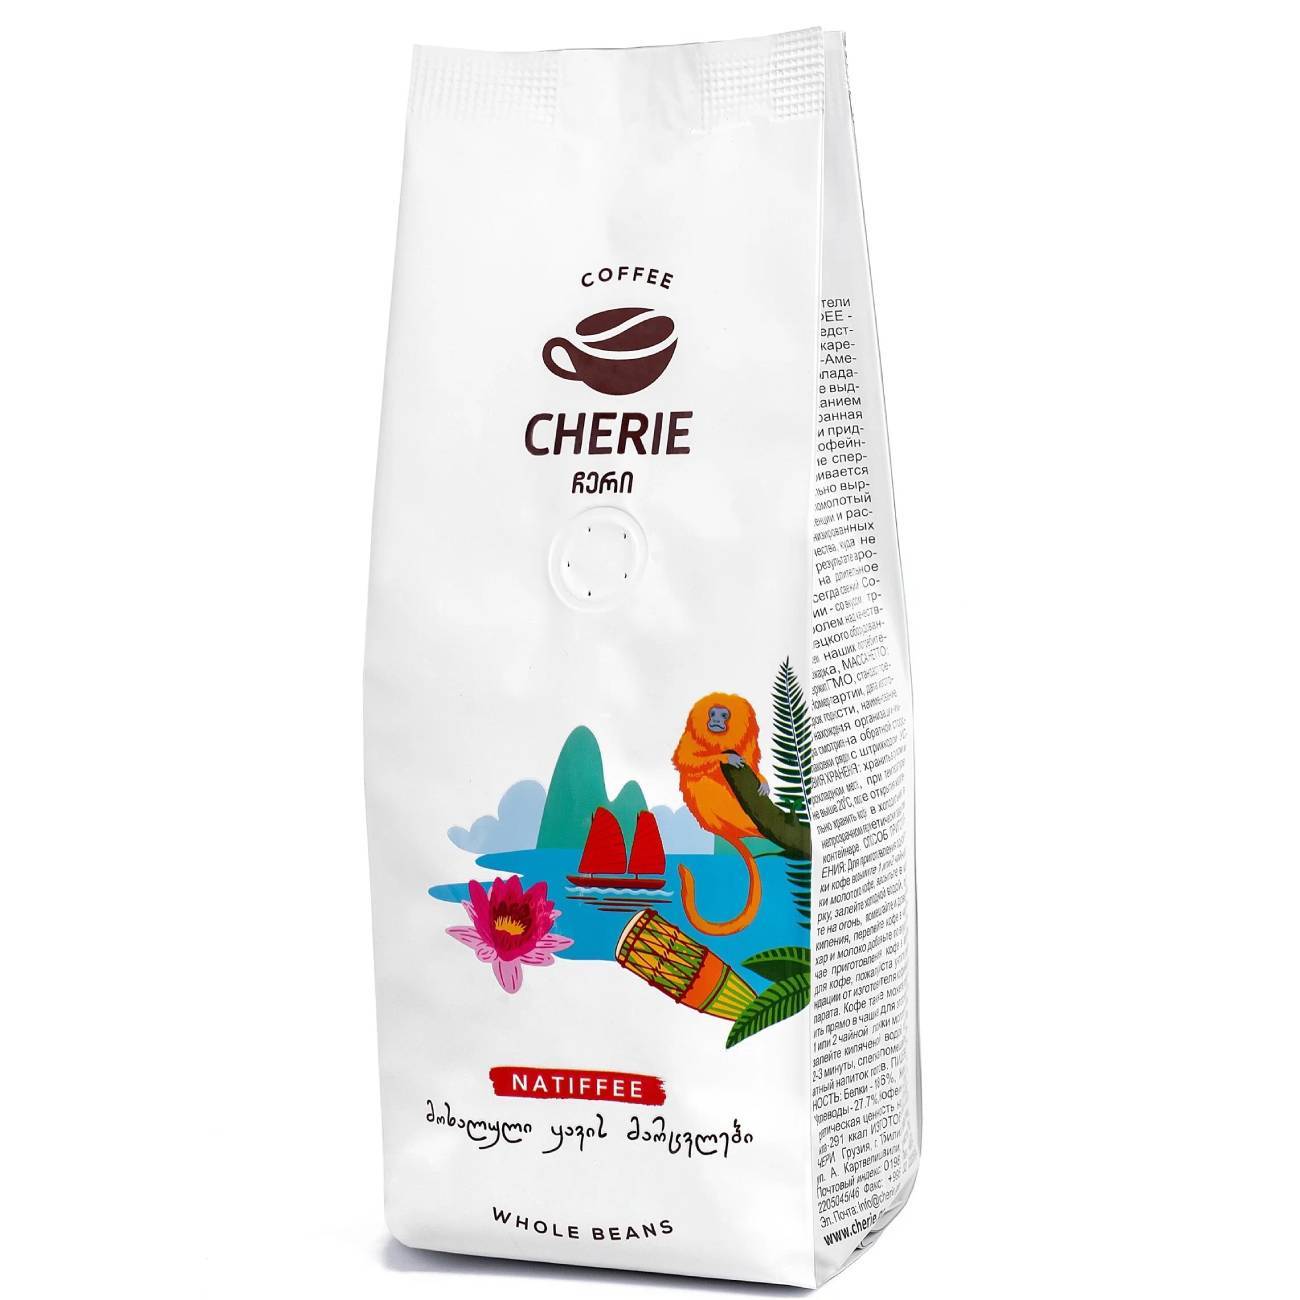 Кофе Cherie зерно натиффее, 1 кг кофе д аффари 850 г коломбия зерно